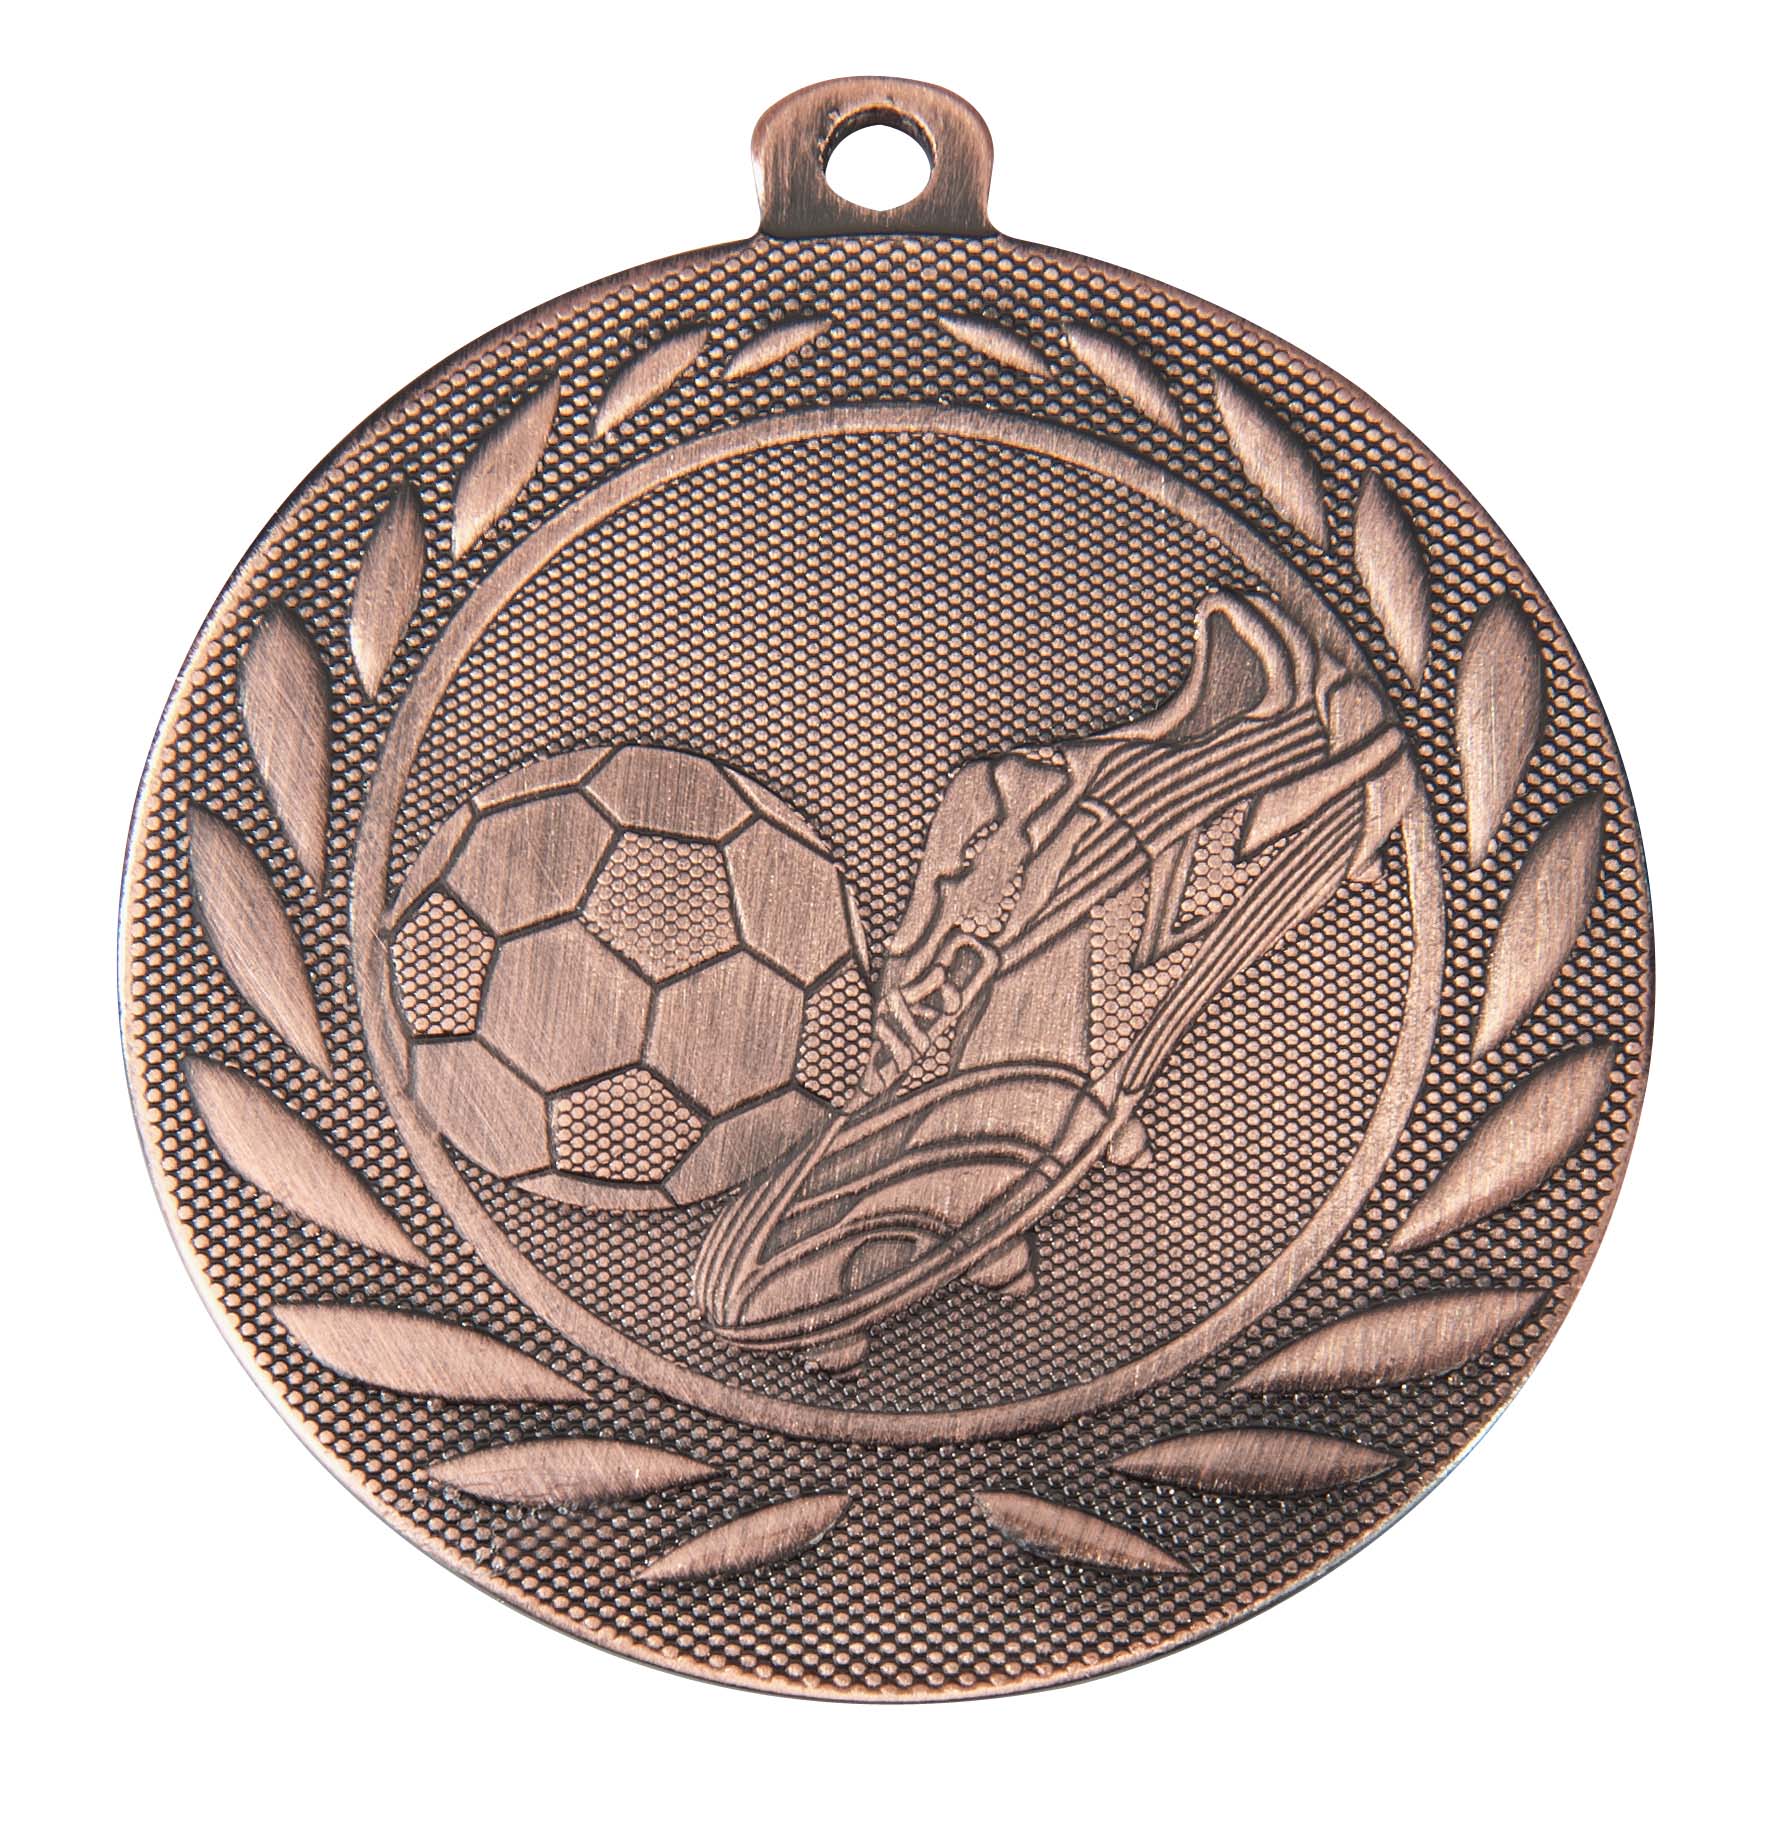 Fußball Medaille DI5000B inkl. Band und Beschriftung Bronze Unmontiert